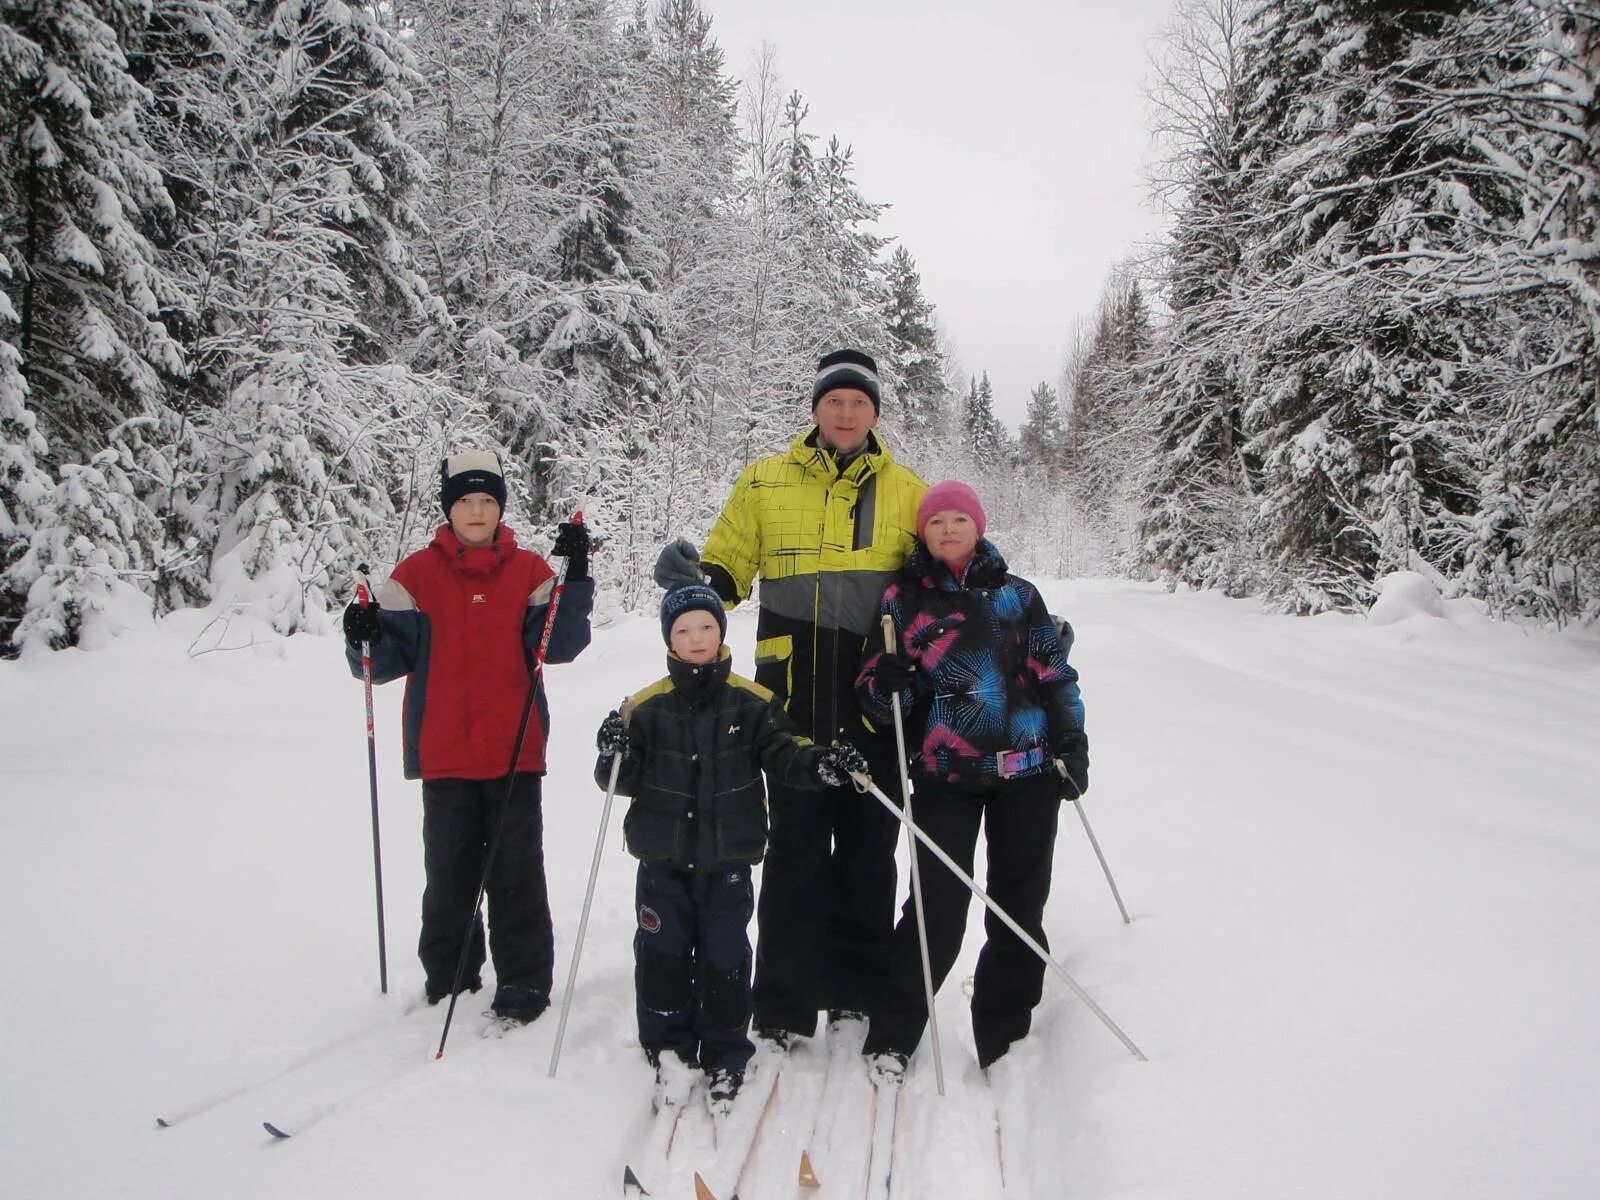 Семейная прогулка на лыжах. Семейная лыжная прогулка. Прогулка на лыжах в лесу. Лыжный туризм в лесу. Семья лыжников